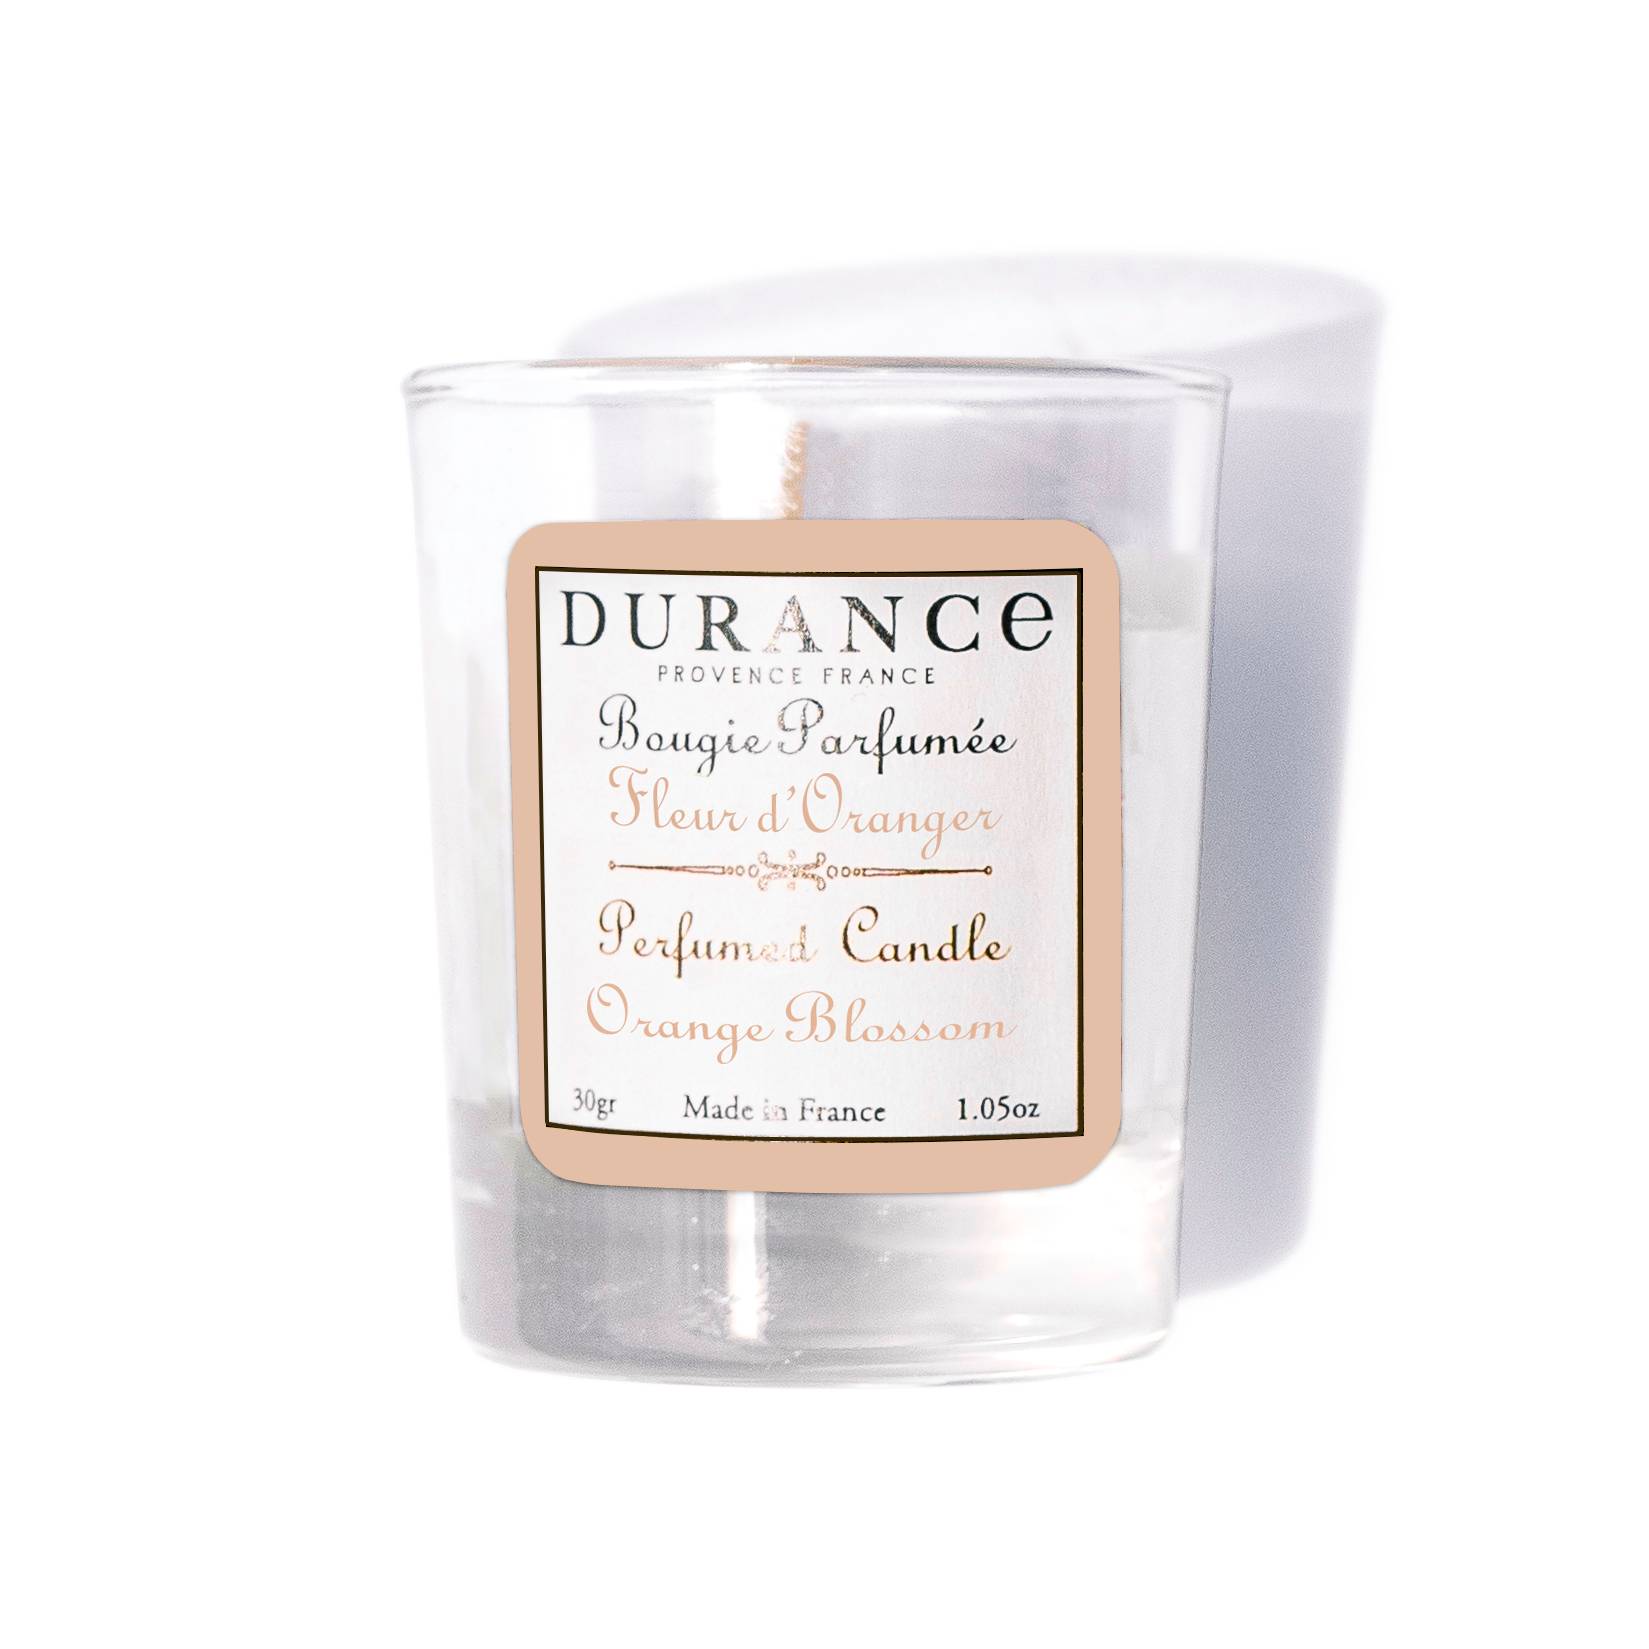 Bougie parfumée Fleur d'Oranger 30g - Durance